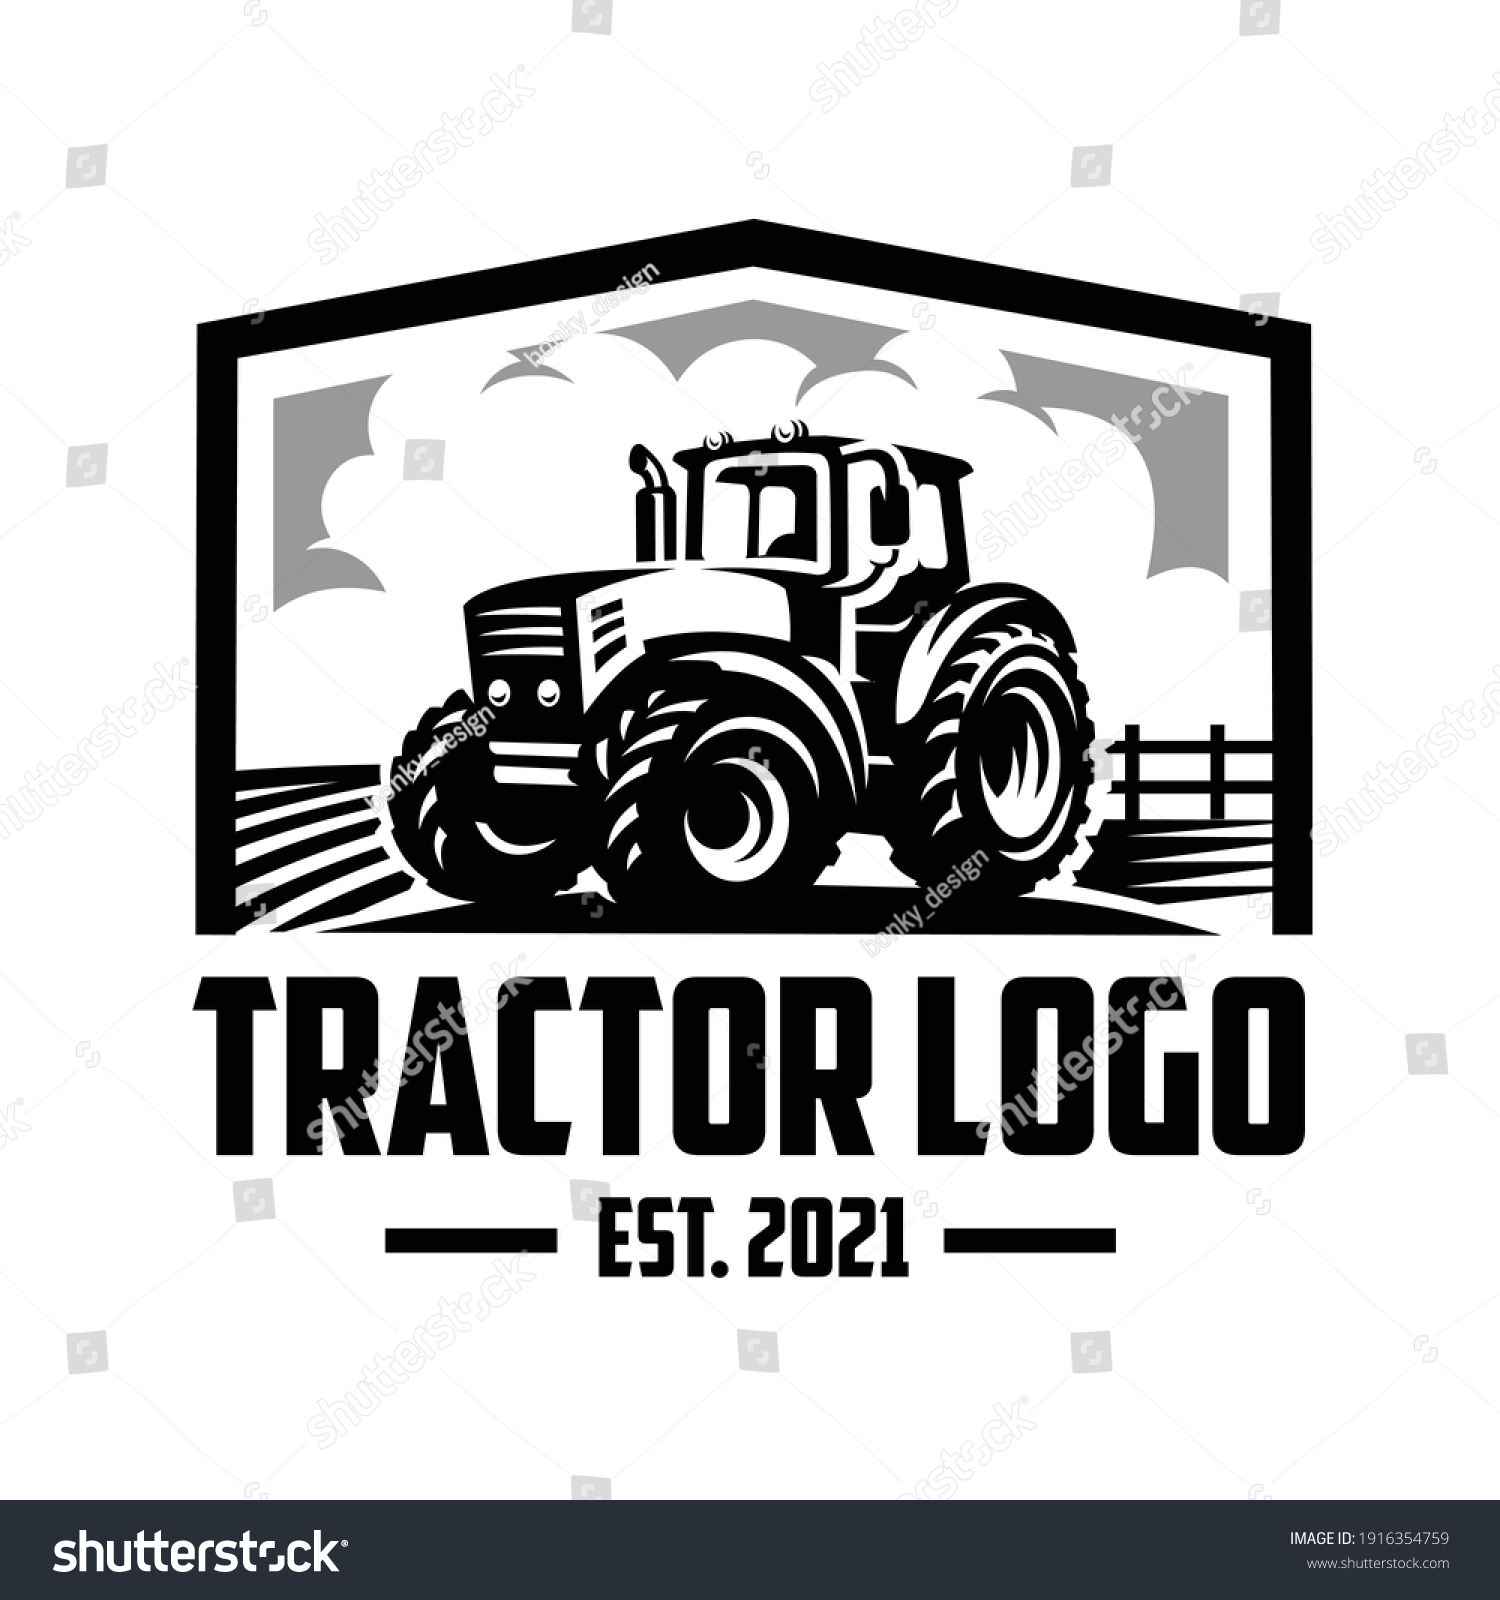 Tractors logos Images, Stock Photos & Vectors | Shutterstock